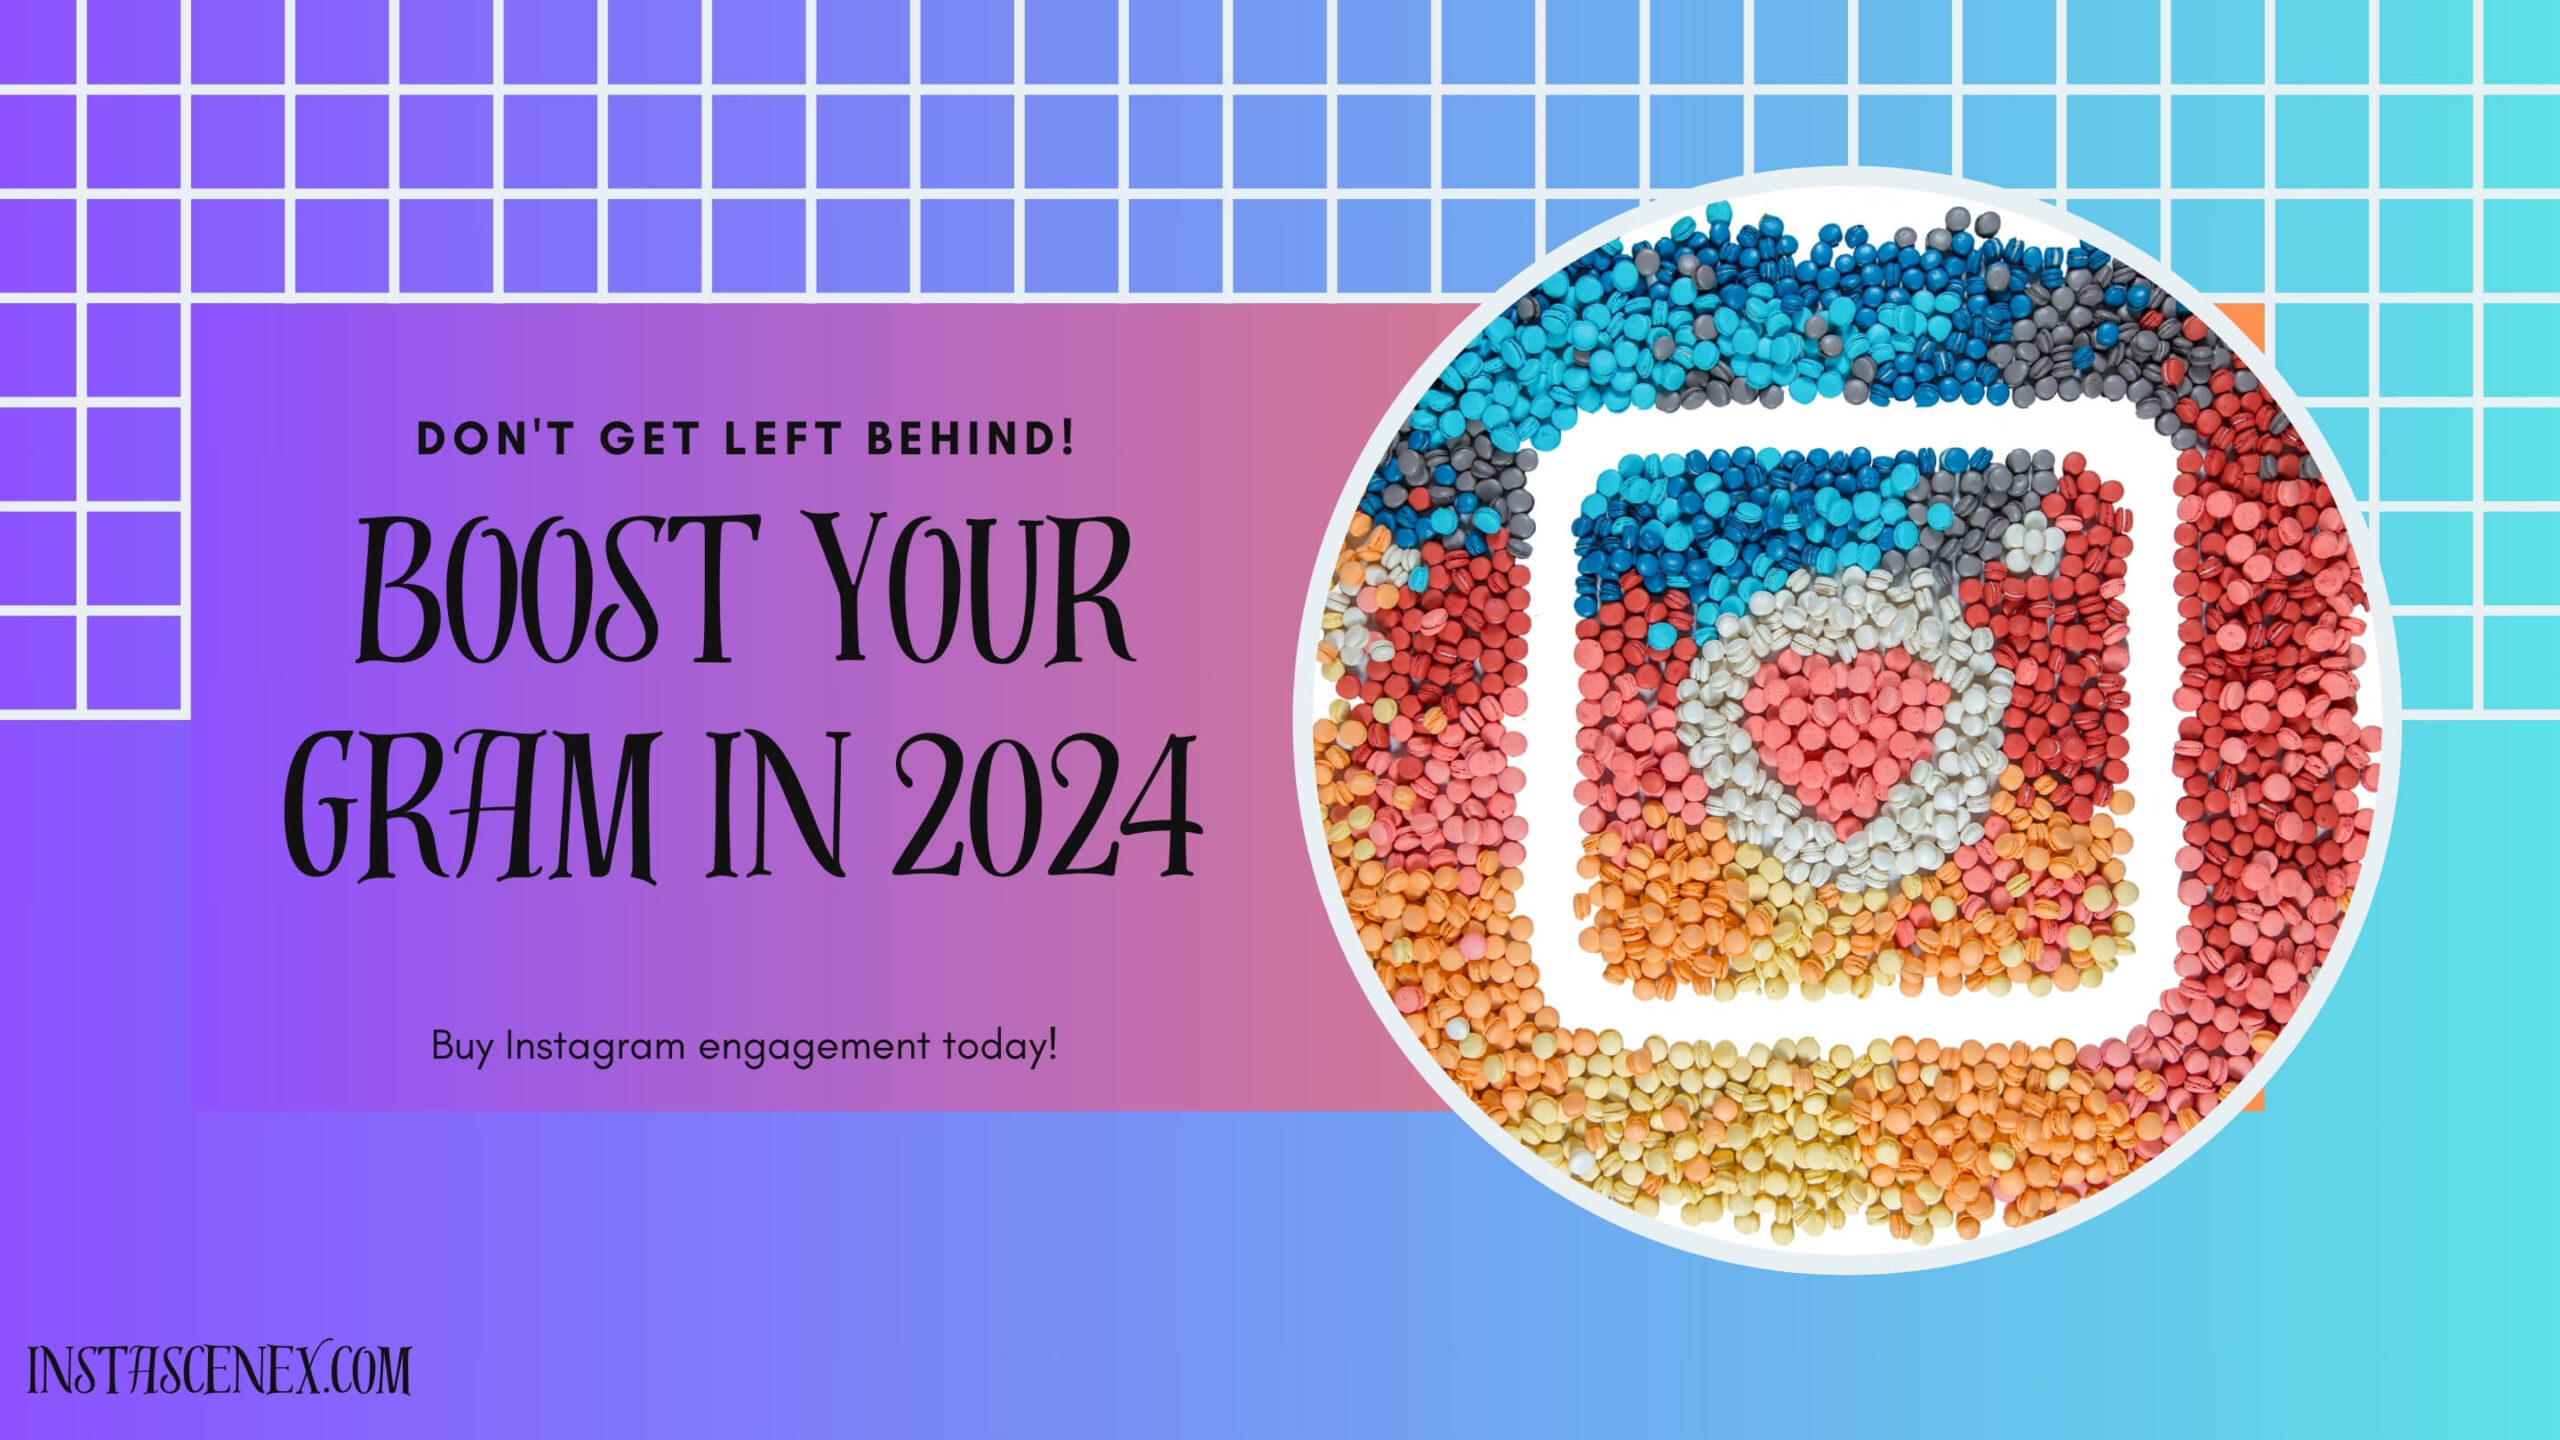 Buy Instagram engagement, Boost Your Gram in 2024